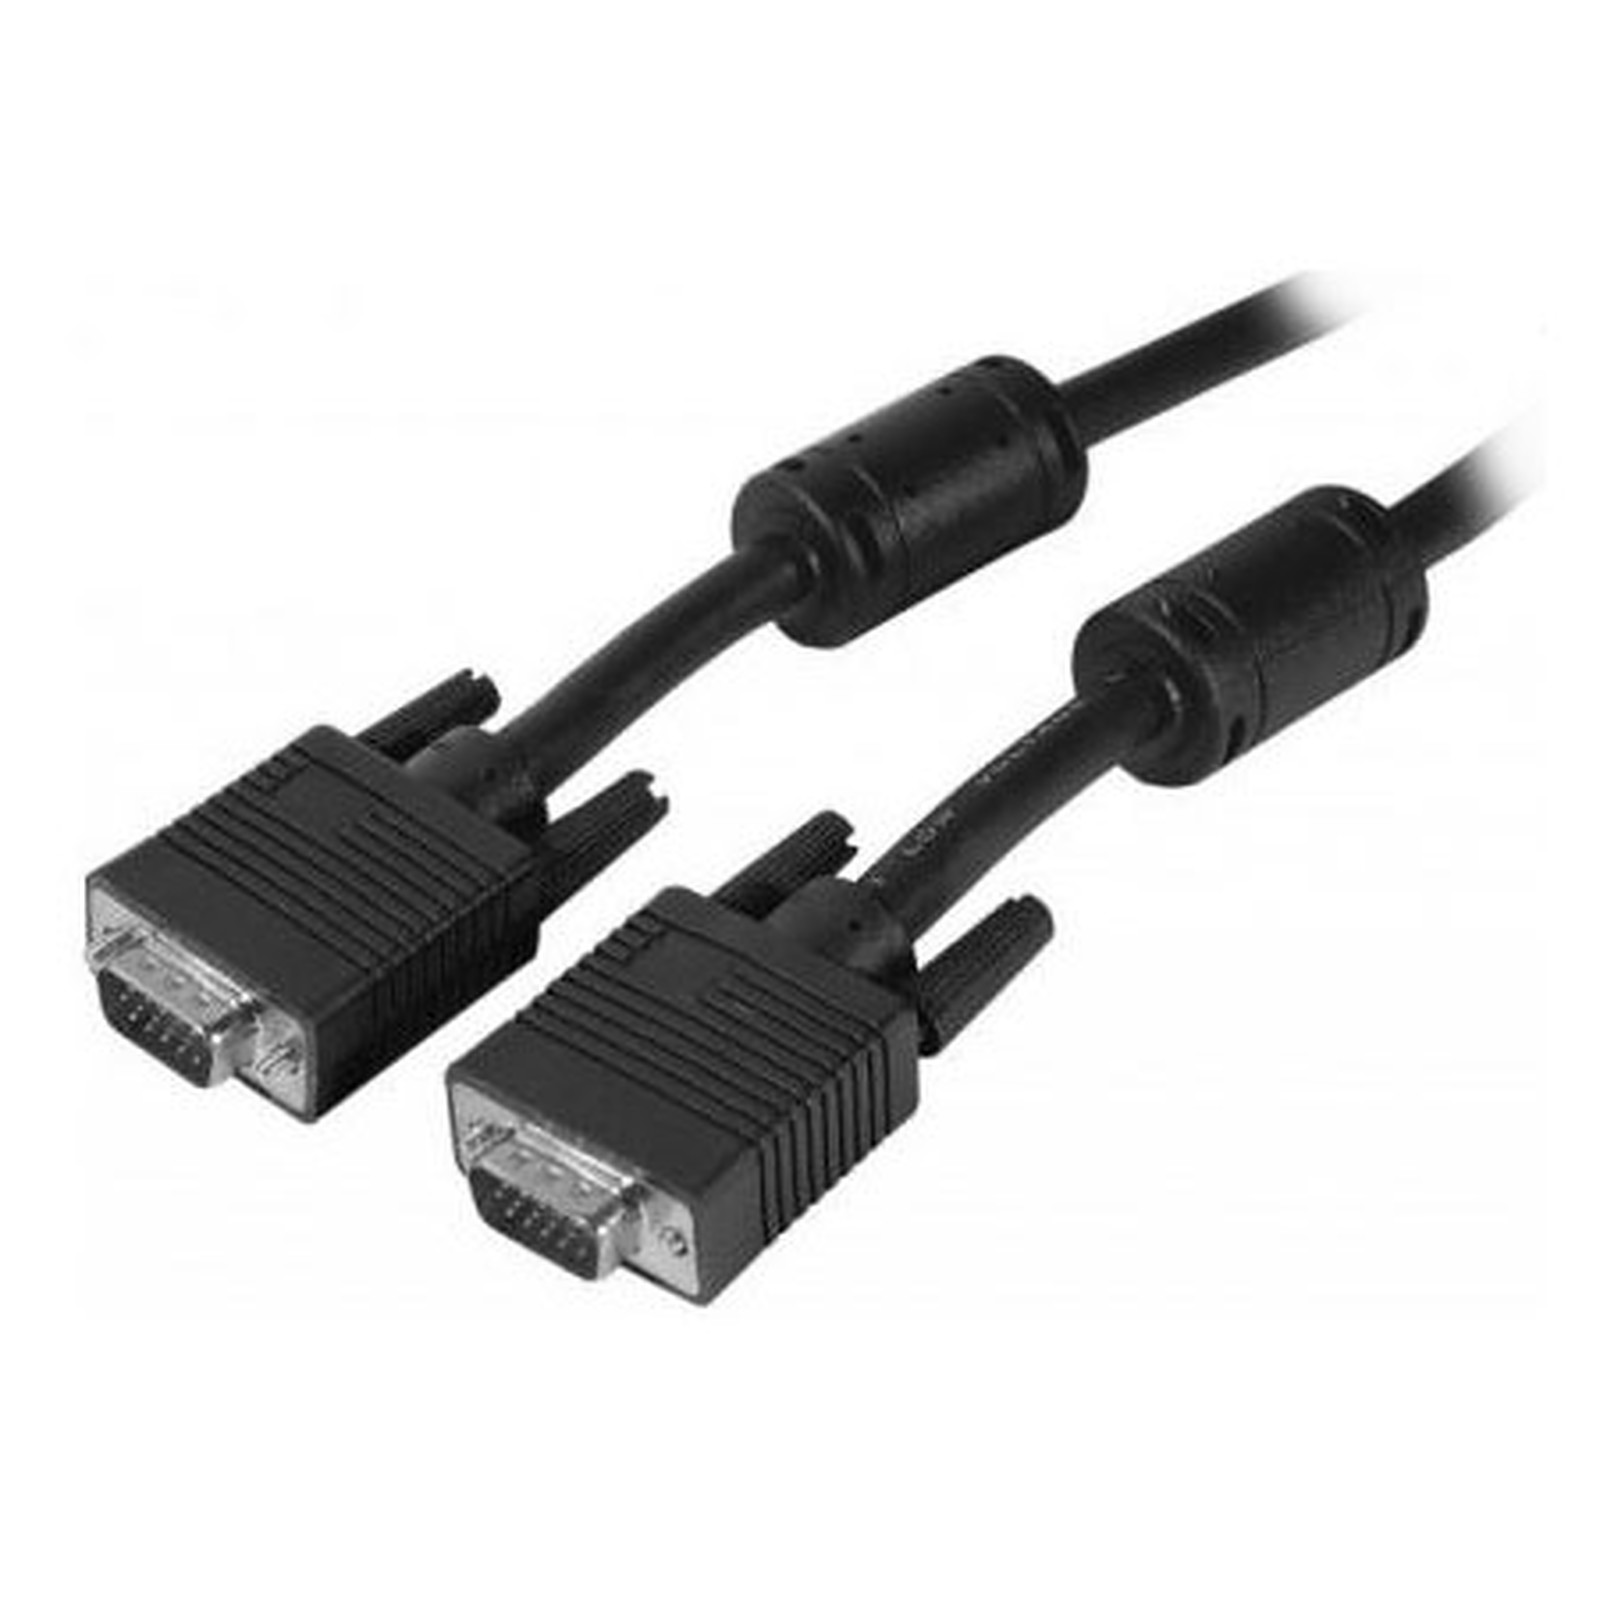 Cable VGA HD male / male (1.80 mètre) - VGA Generique